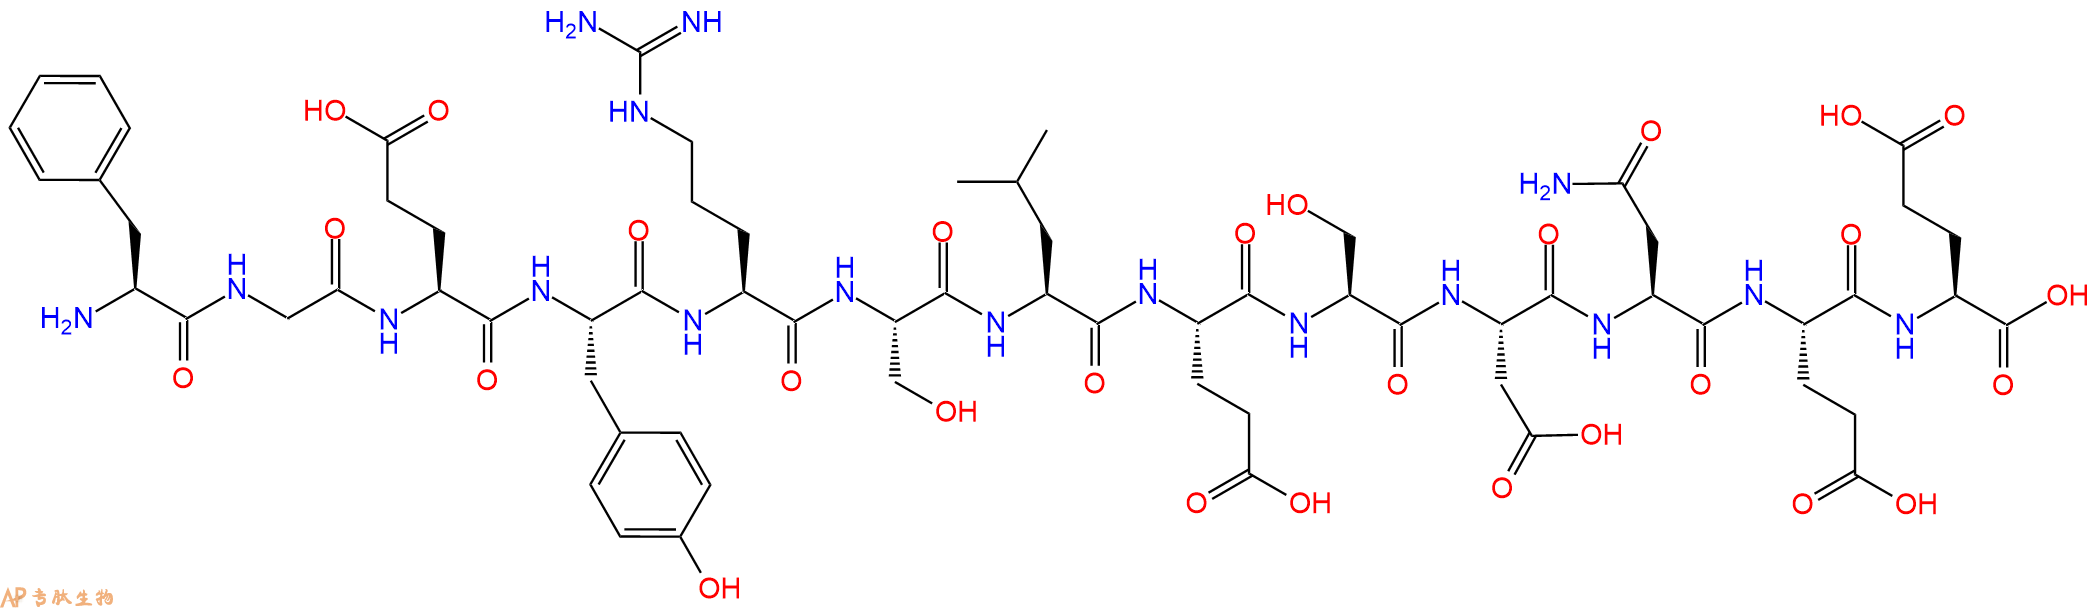 专肽生物产品L1FLCD (1173 - 1185)